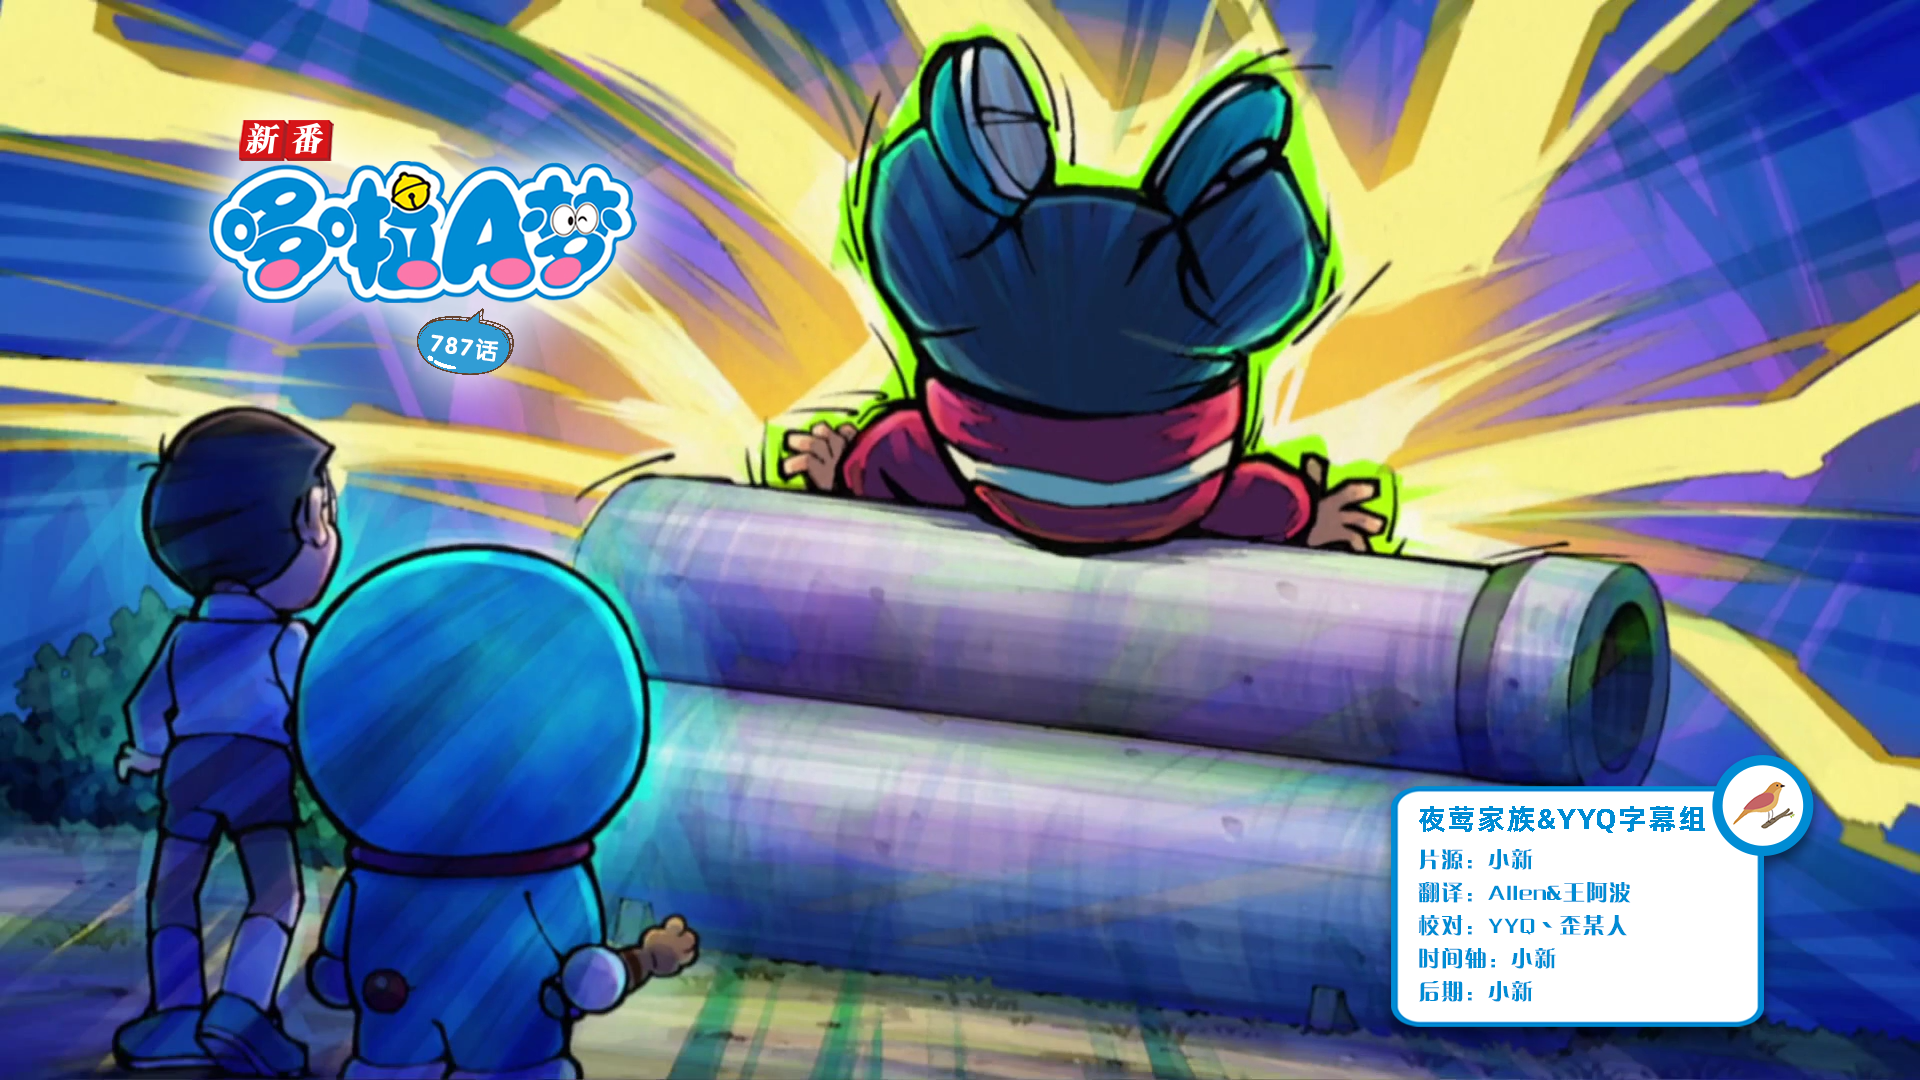 [夜莺家族&YYQ字幕组]New Doraemon 哆啦A梦新番[787][2023.12.02][AVC][1080P][GB_JP]